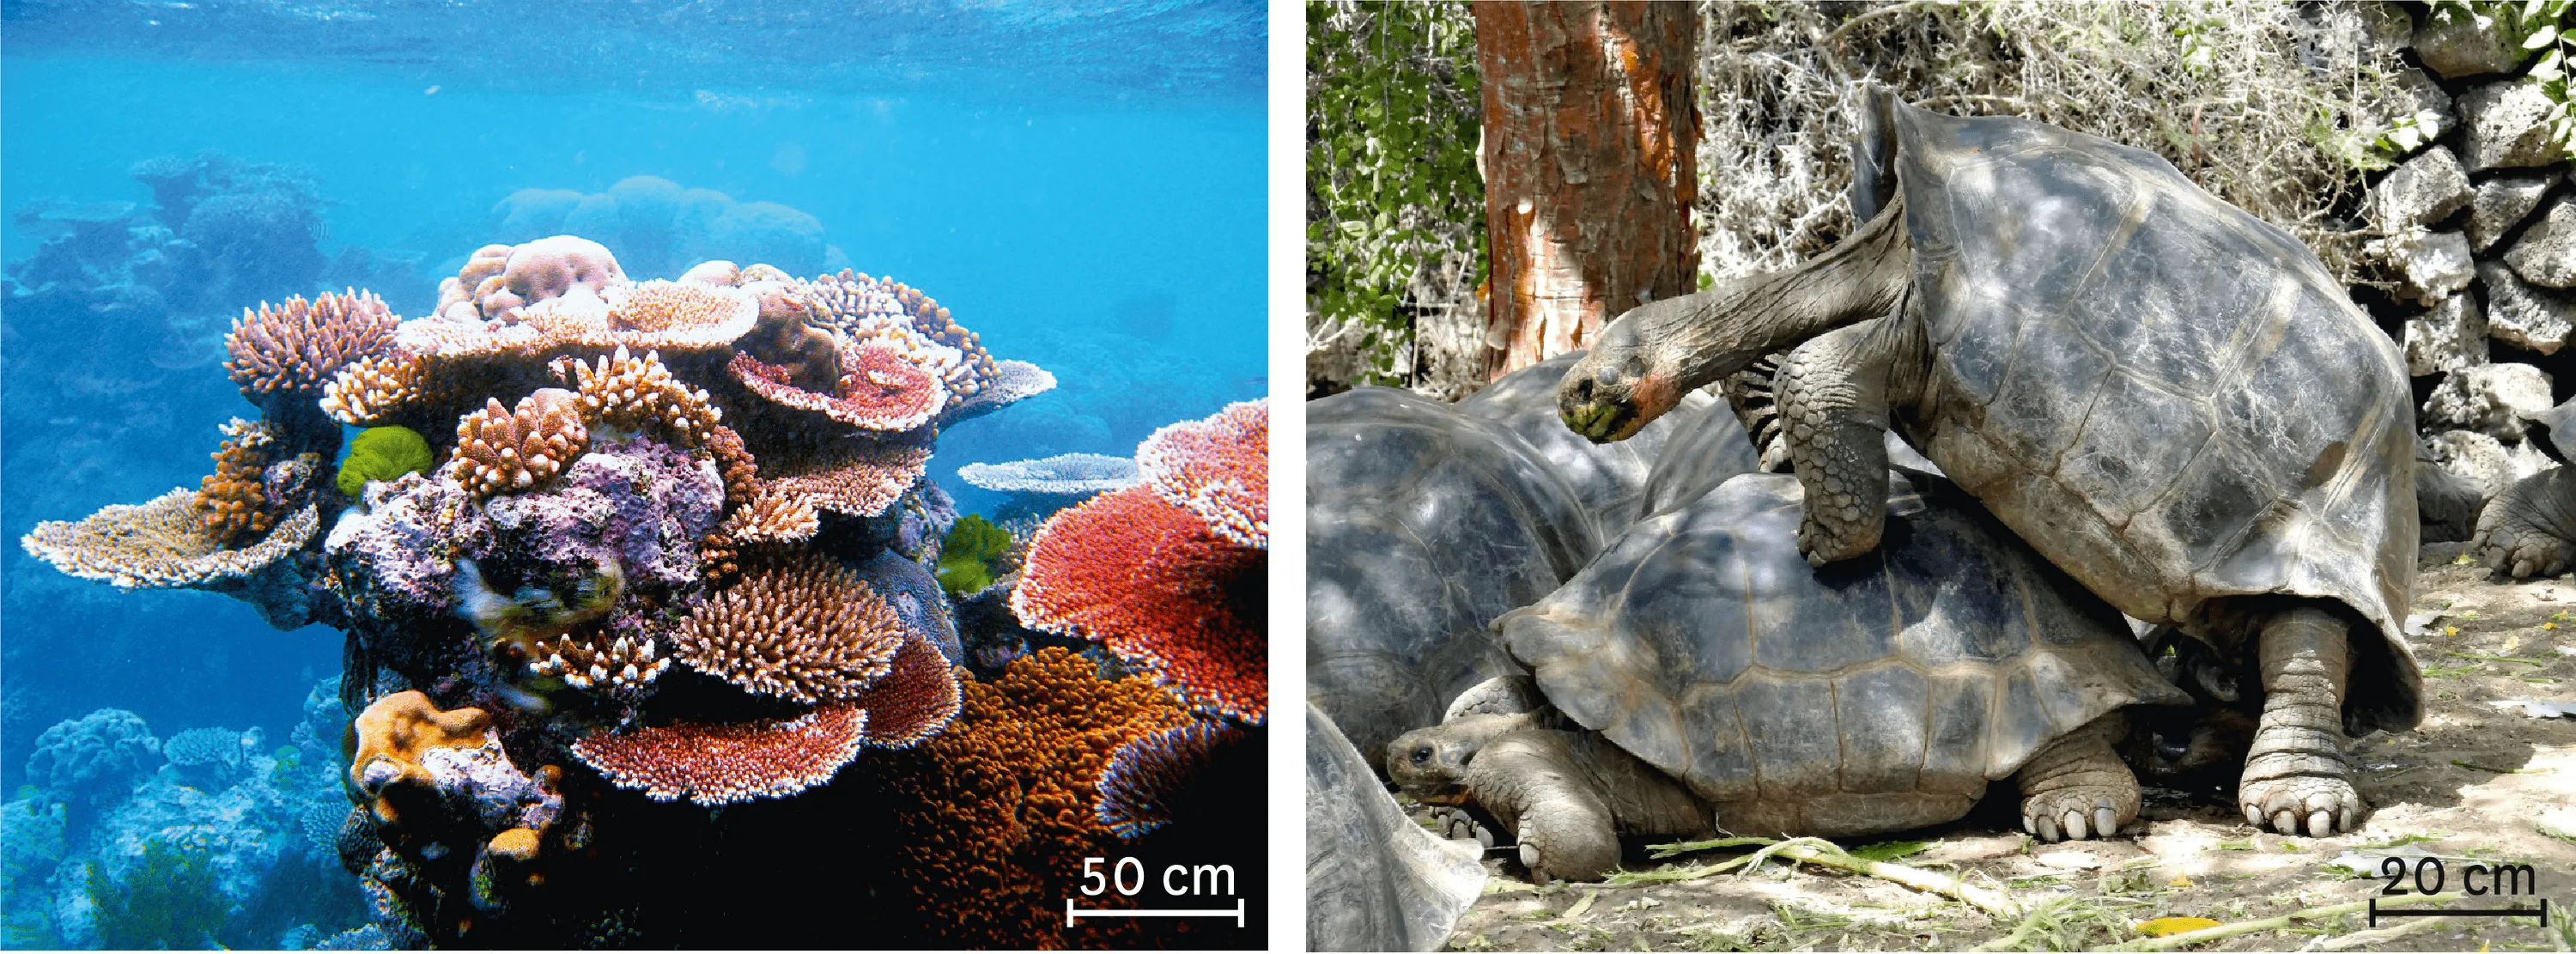 Photographie de corail et d'un accouplement de tortues géantes des Galápagos.